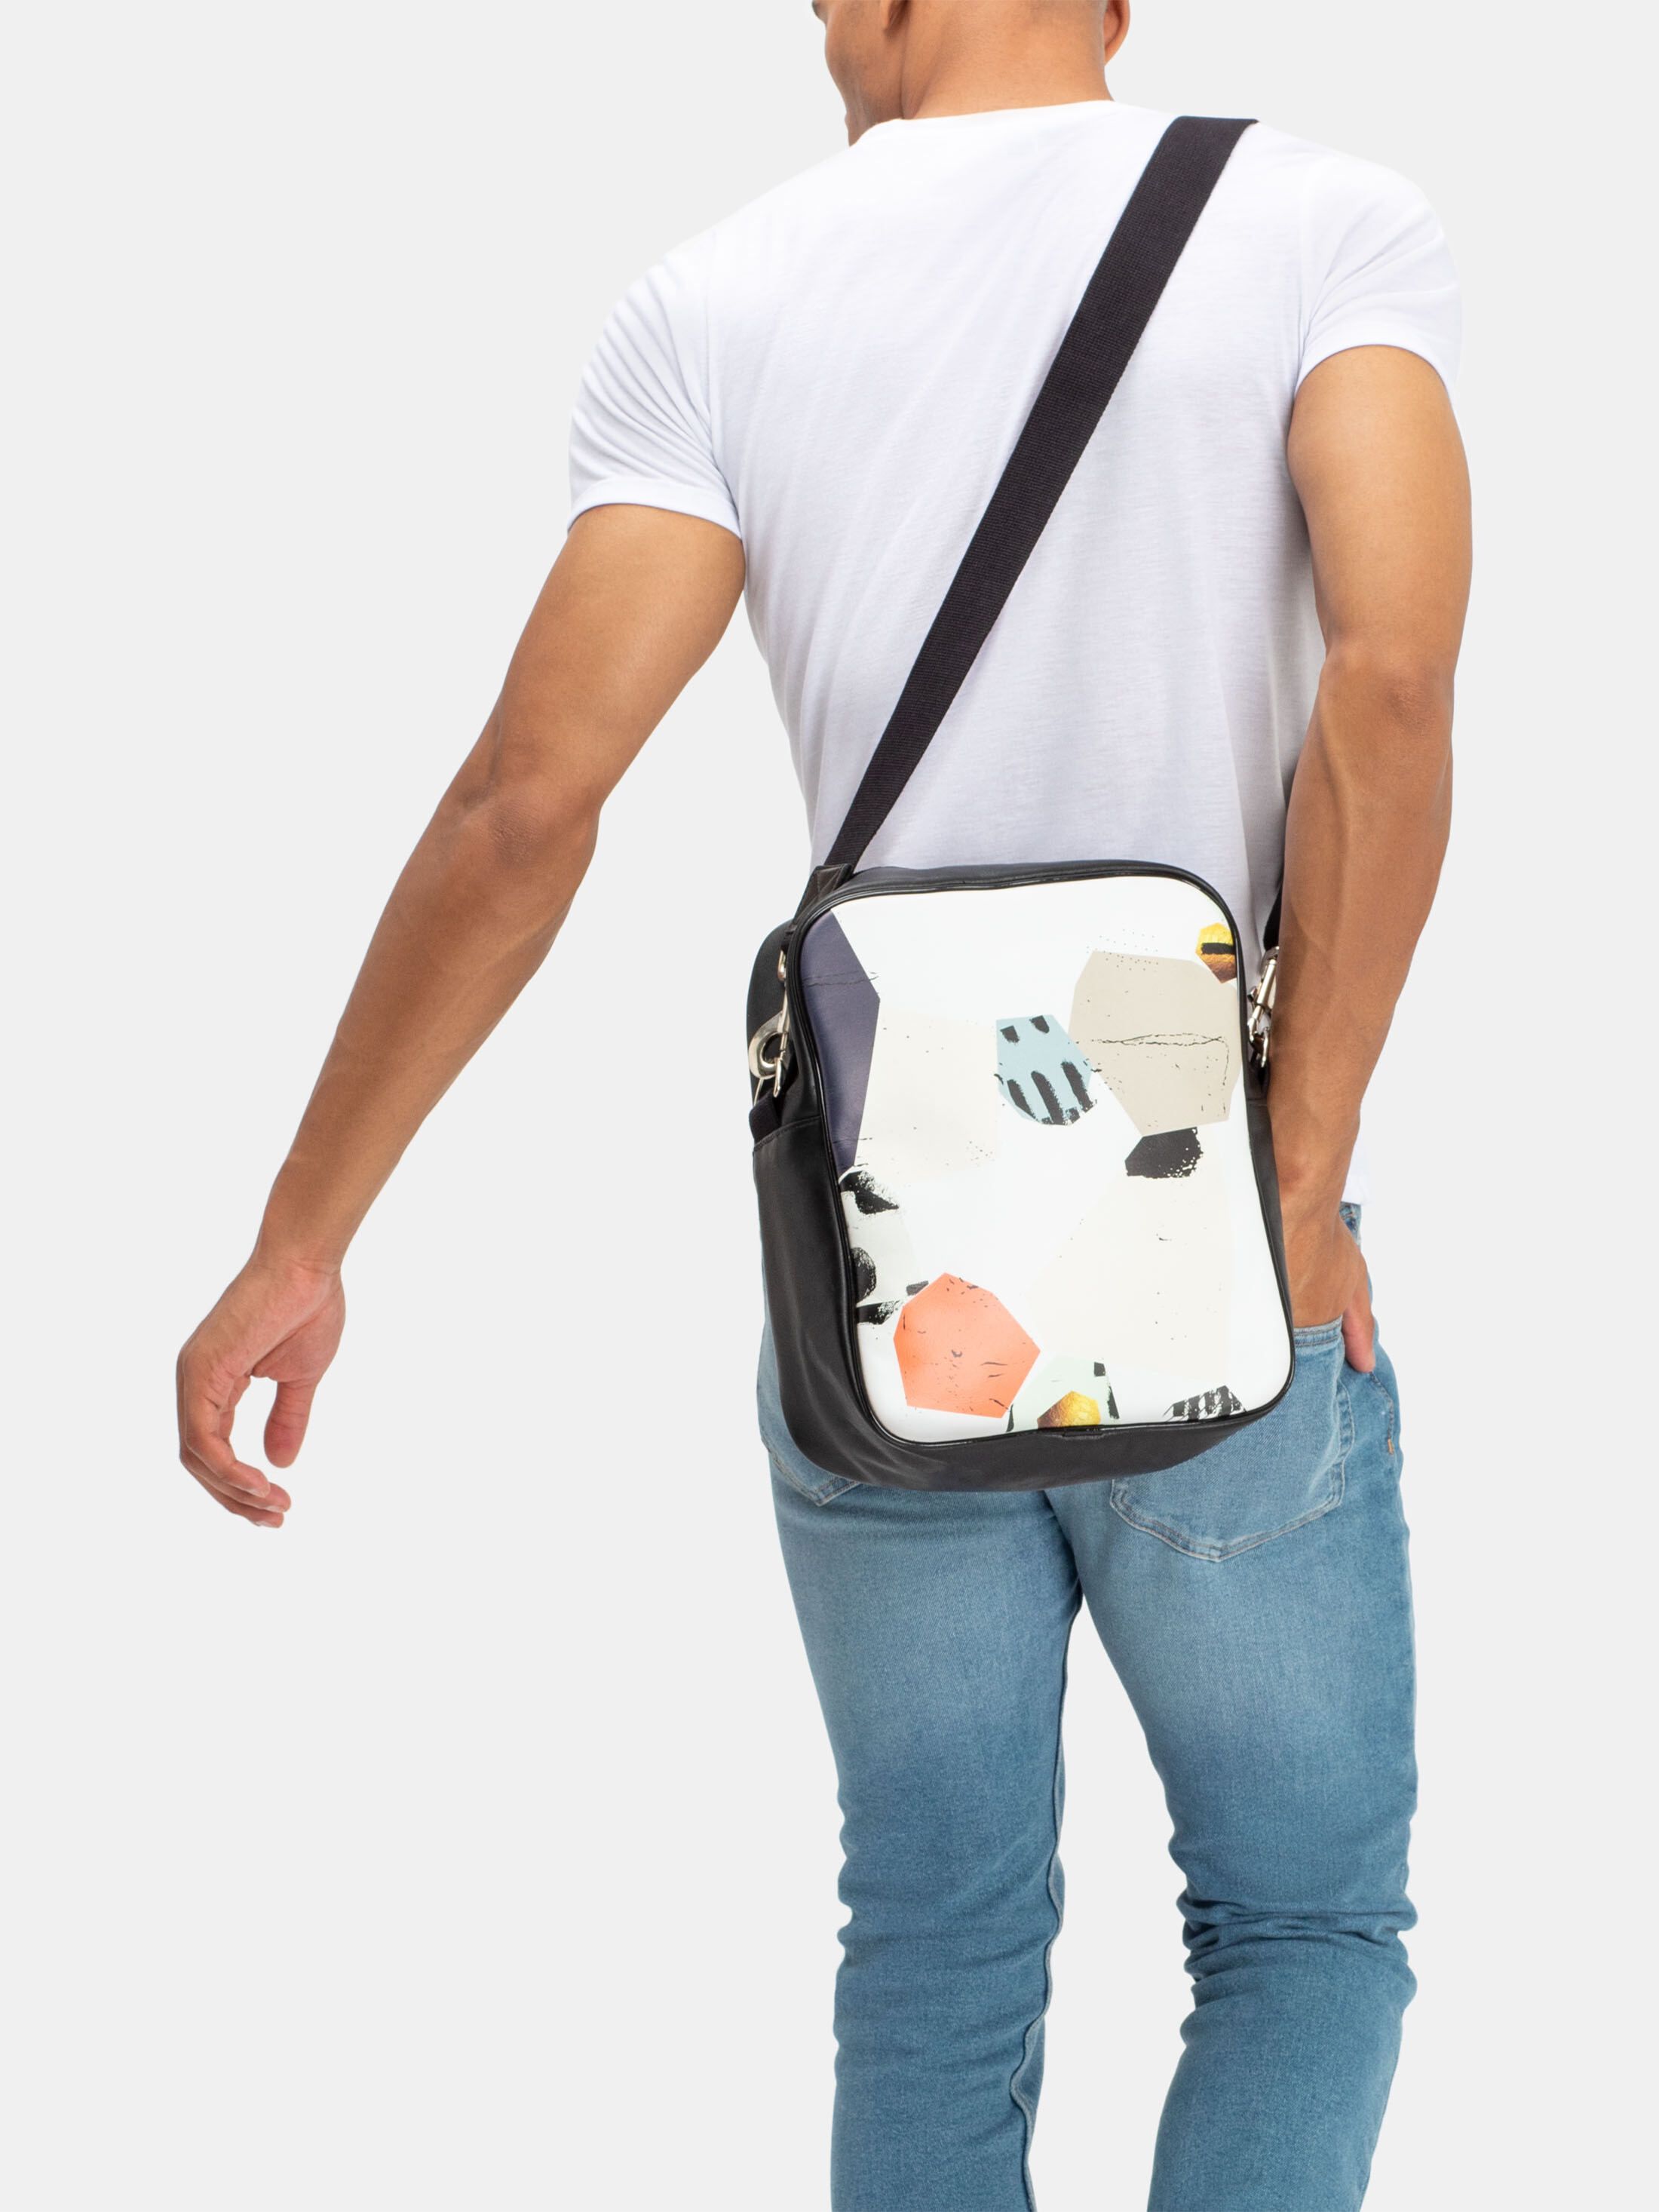 design your own messenger bag